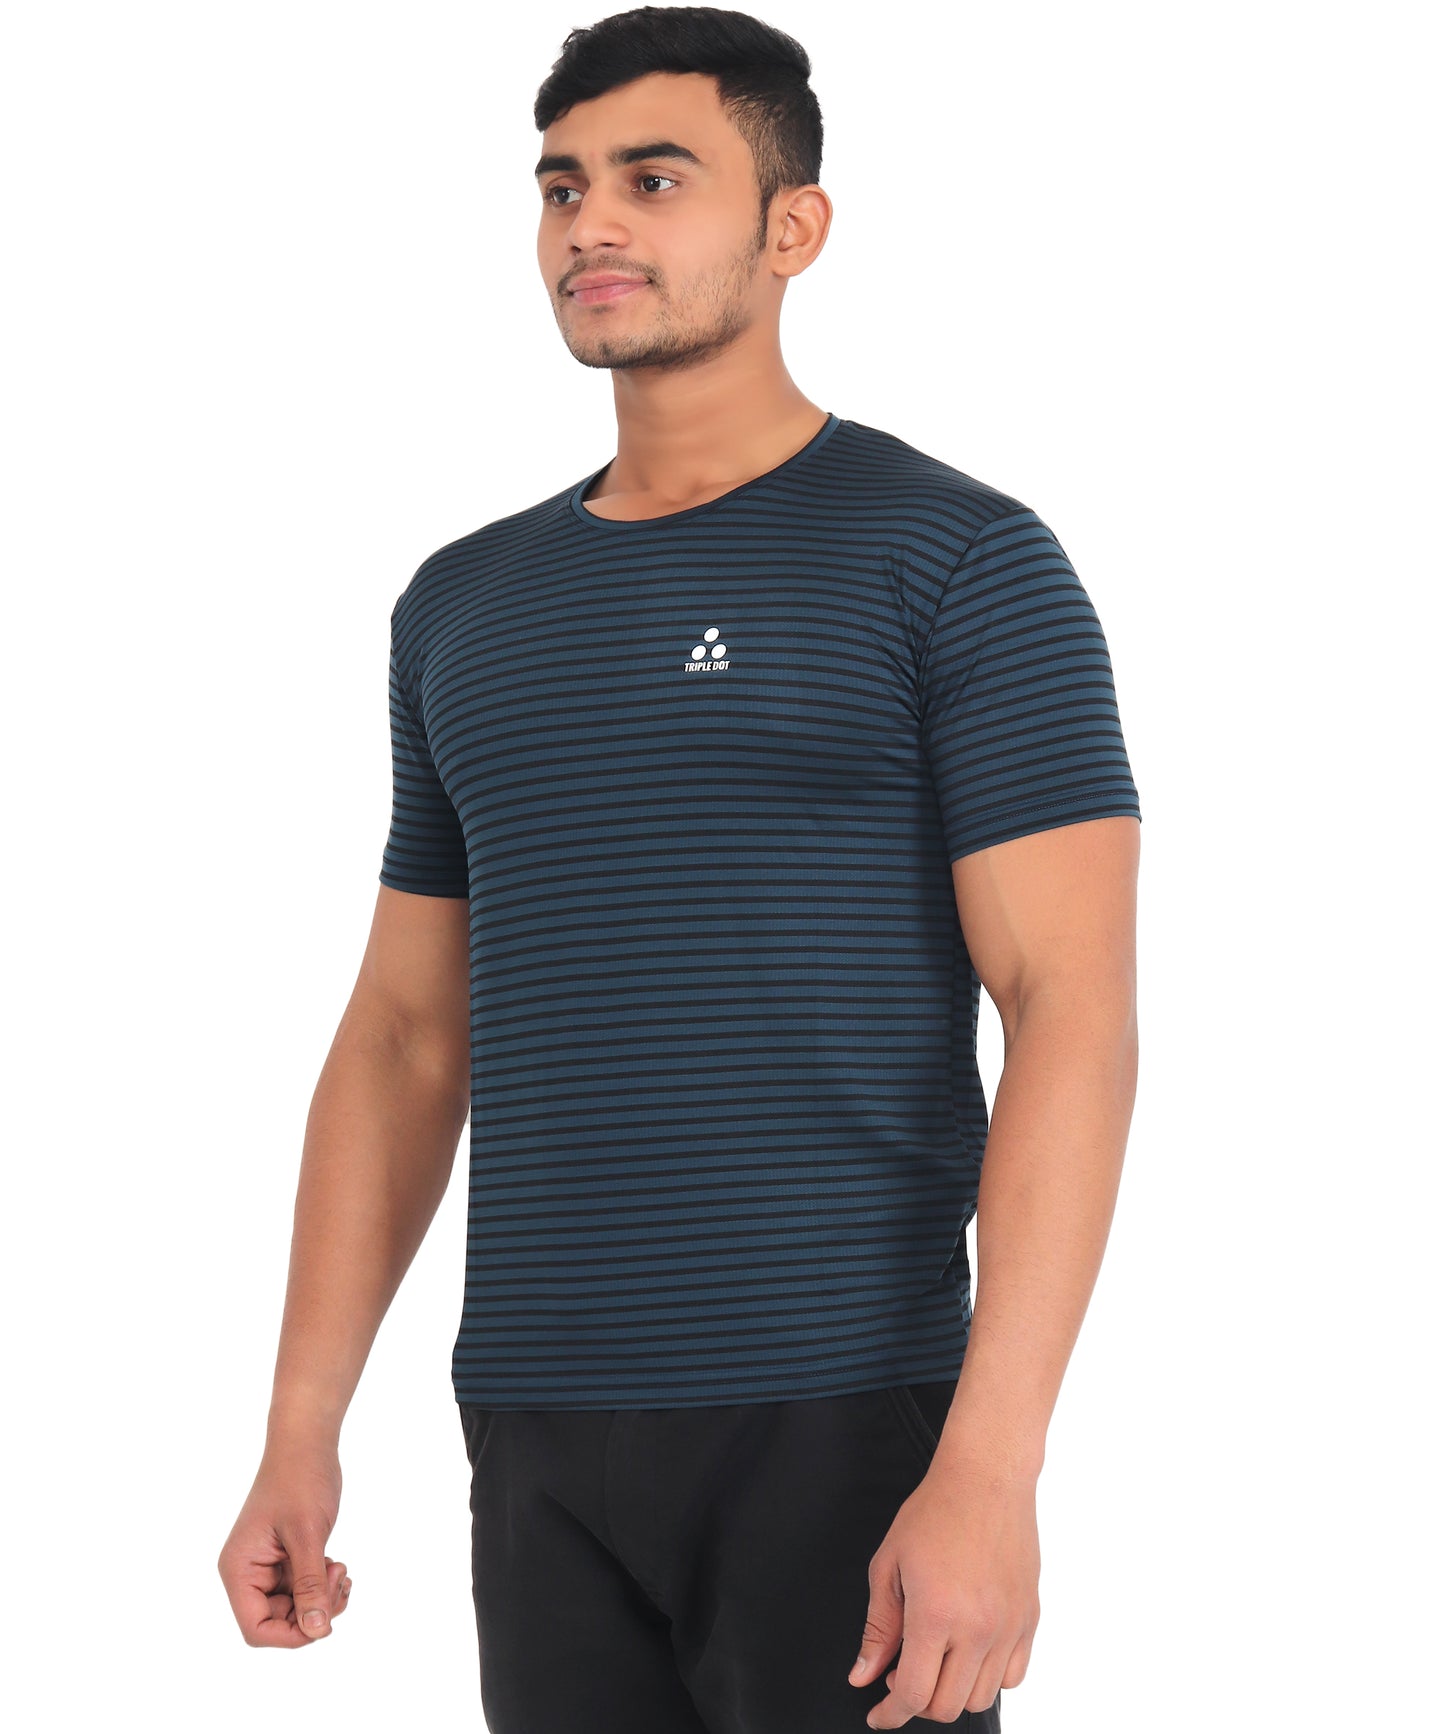 Triple Dot Navy Blue Strip Pattern Dri Fit Polyester T shirt for Men - Triple Dot Clothings